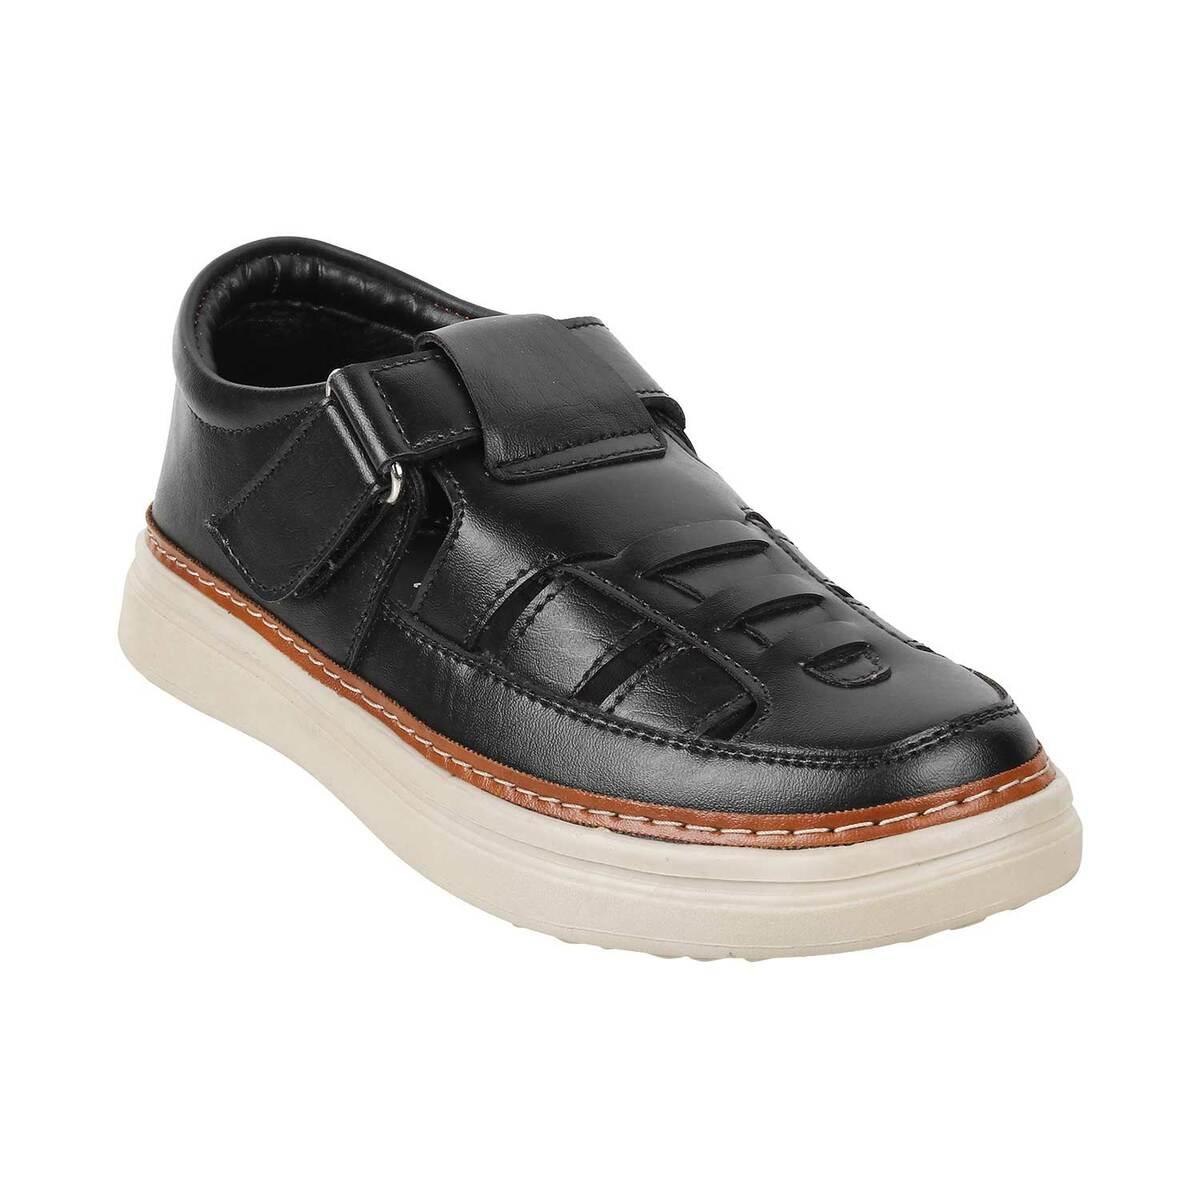 Buy Women Black Casual Sandals Online - 720727 | Allen Solly